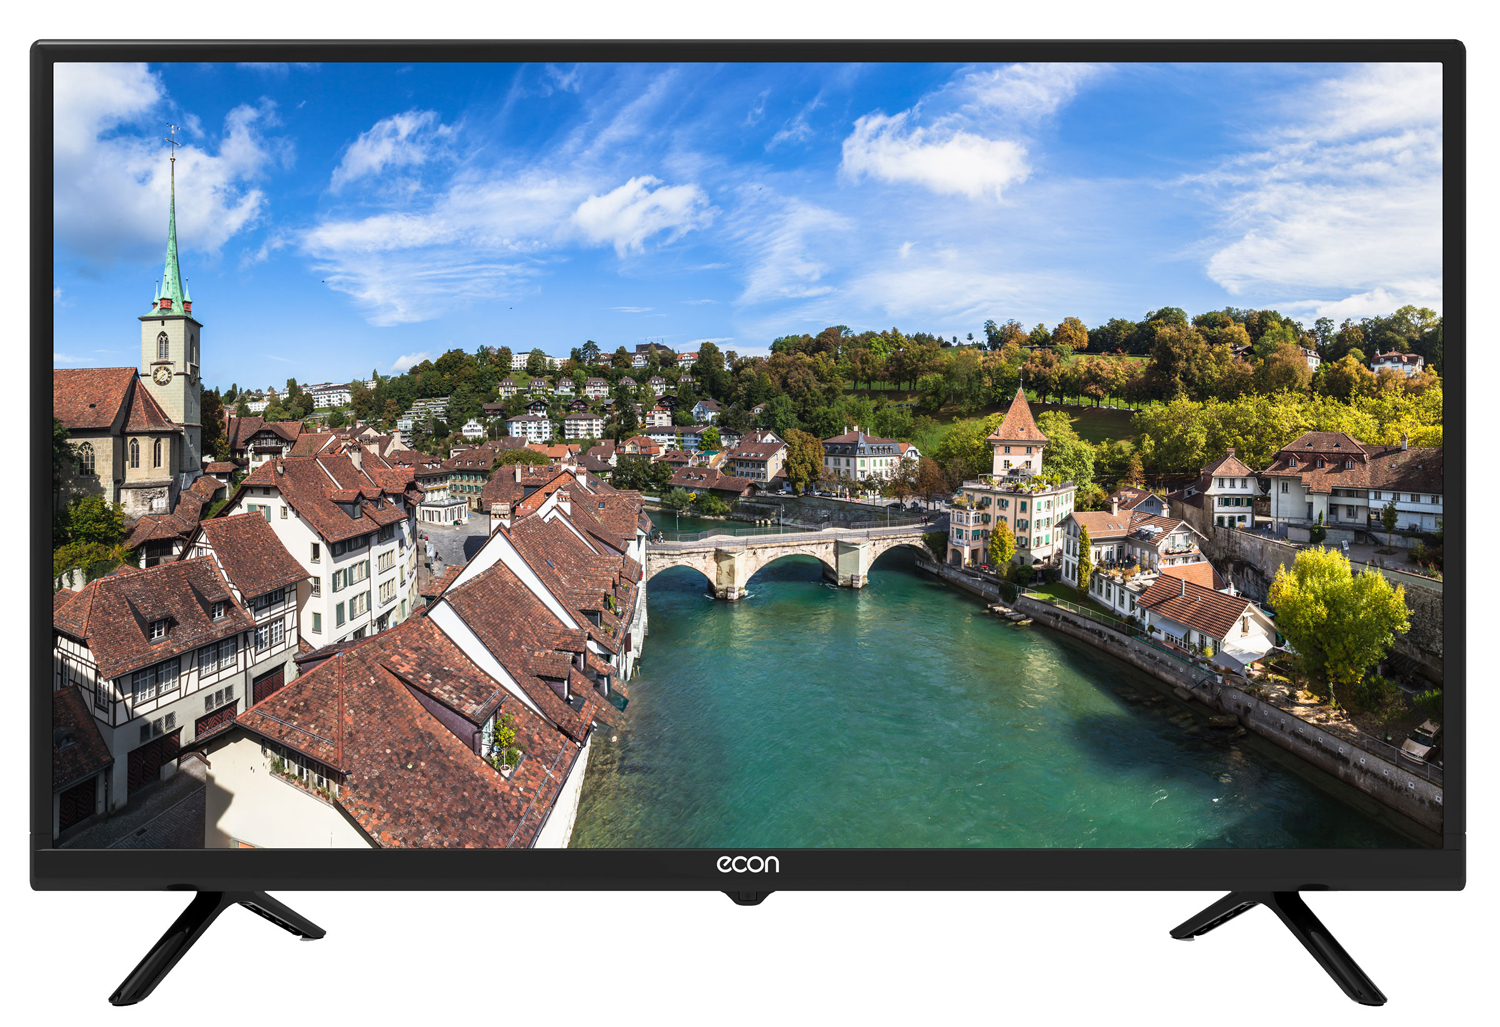 Картинка Smart телевизор ECON EX-32HS003B по разумной цене купить в интернет магазине mall.su